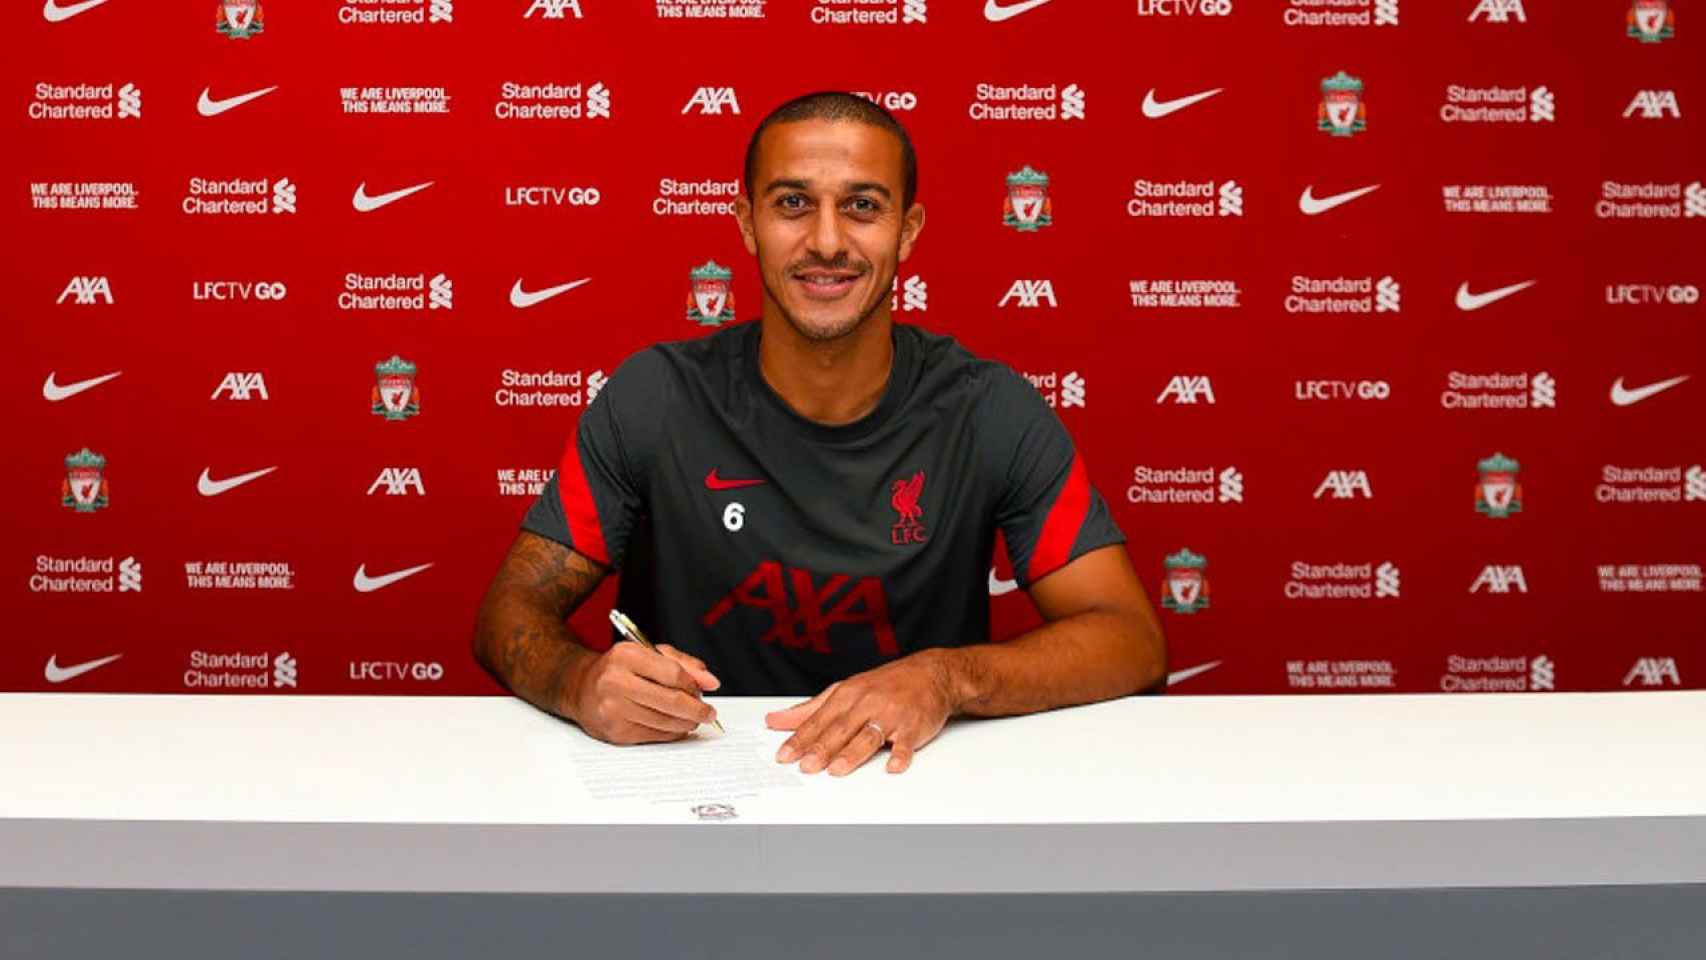 Thiago Alcántara firma con el Liverpool / EFE